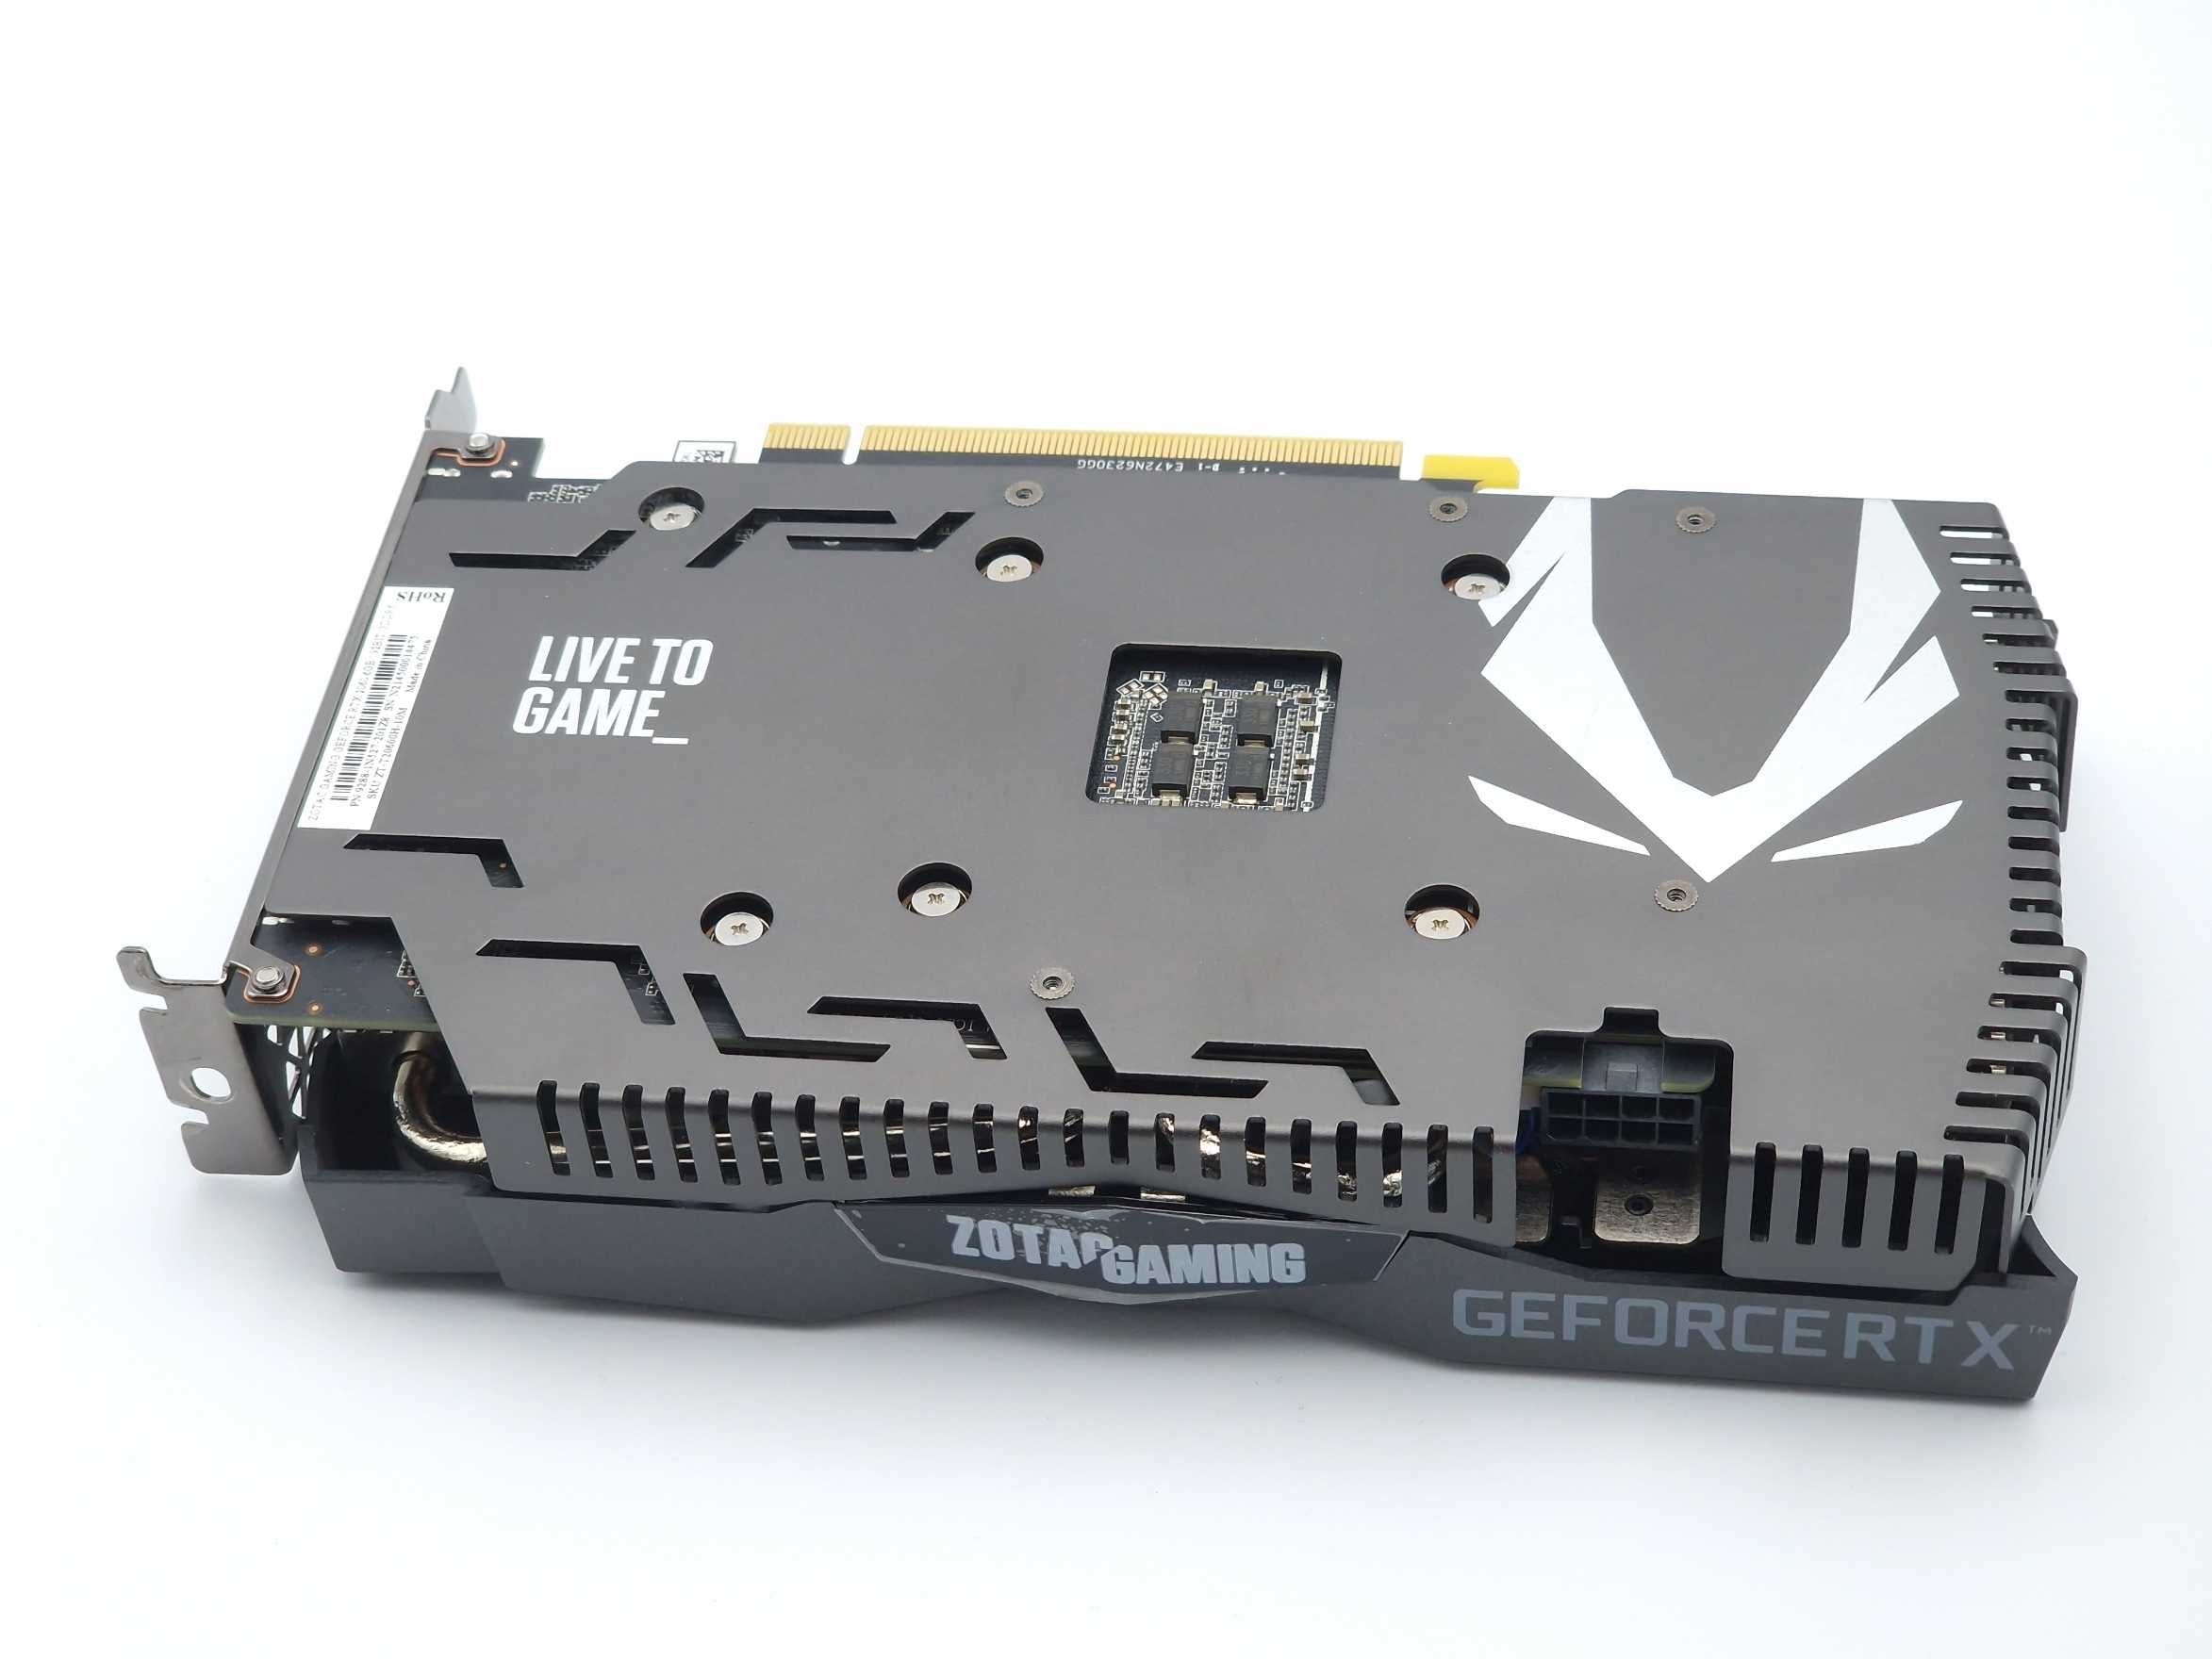 Nowa karta graficzna Zotac GeForce RTX 2060 6GB GDDR6 gwarancja